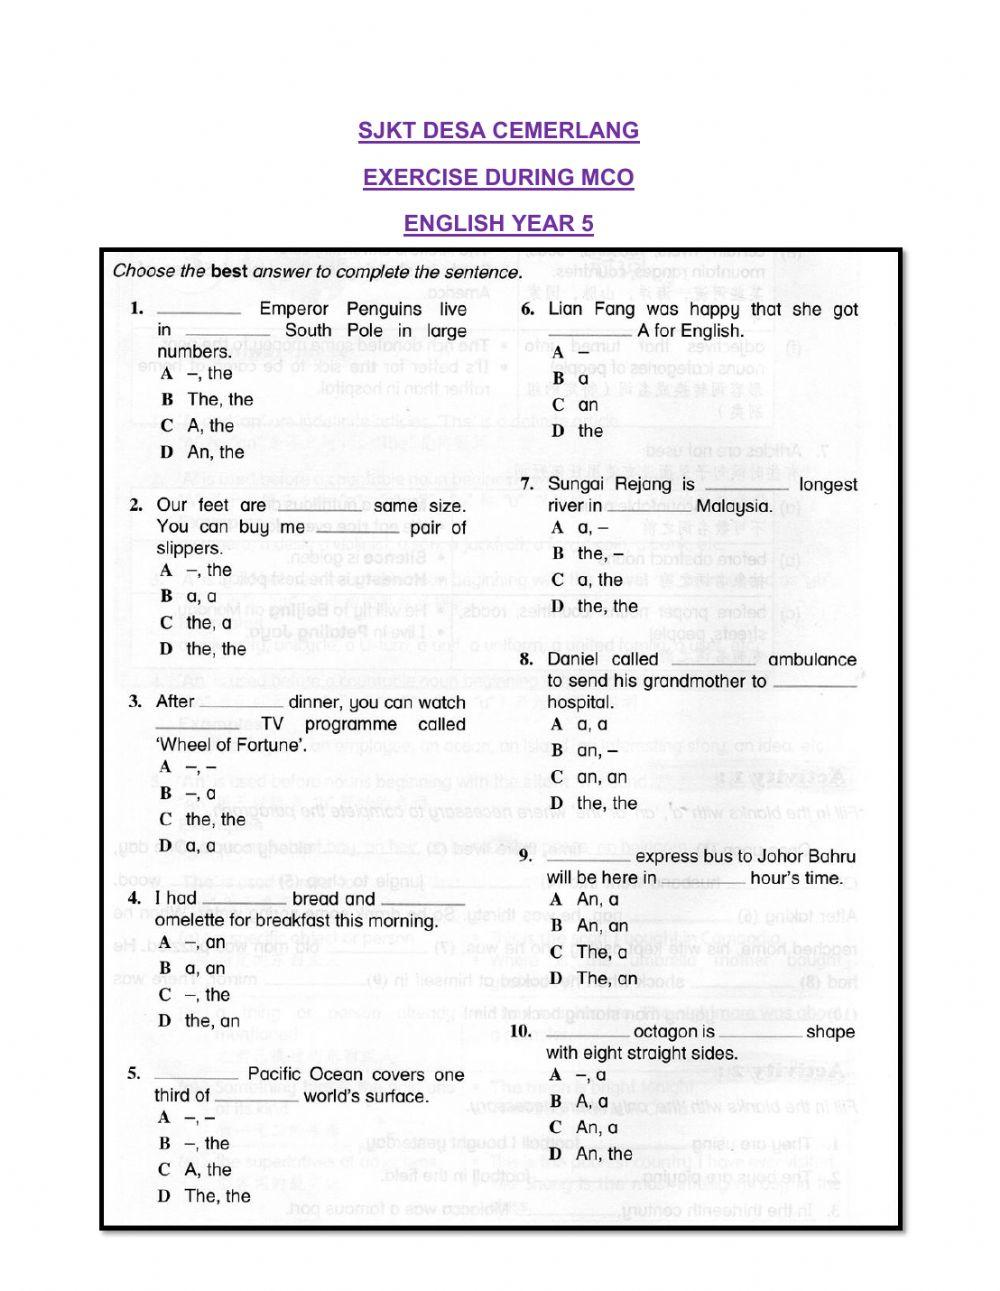 Grammar Questions     SJKT DESA CEMERLANG      Prepared By: Gayu teacher